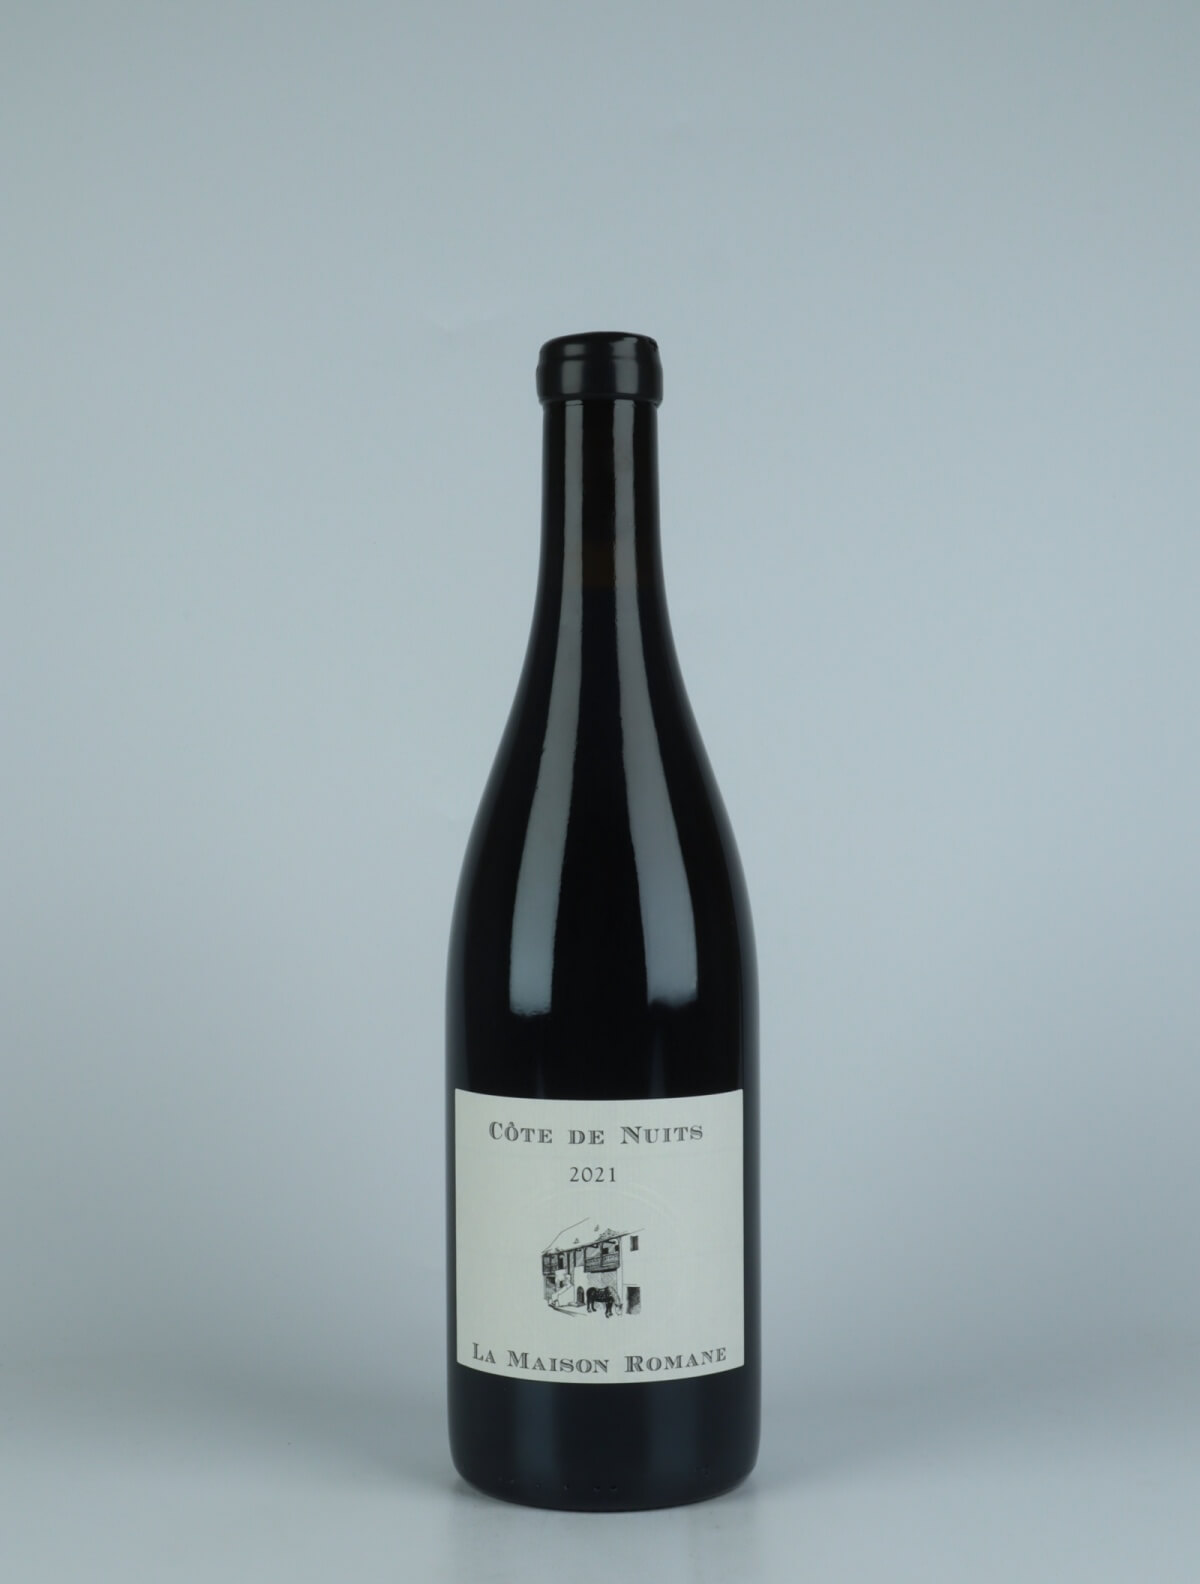 En flaske 2021 Côtes de Nuits Villages Rødvin fra La Maison Romane, Bourgogne i Frankrig